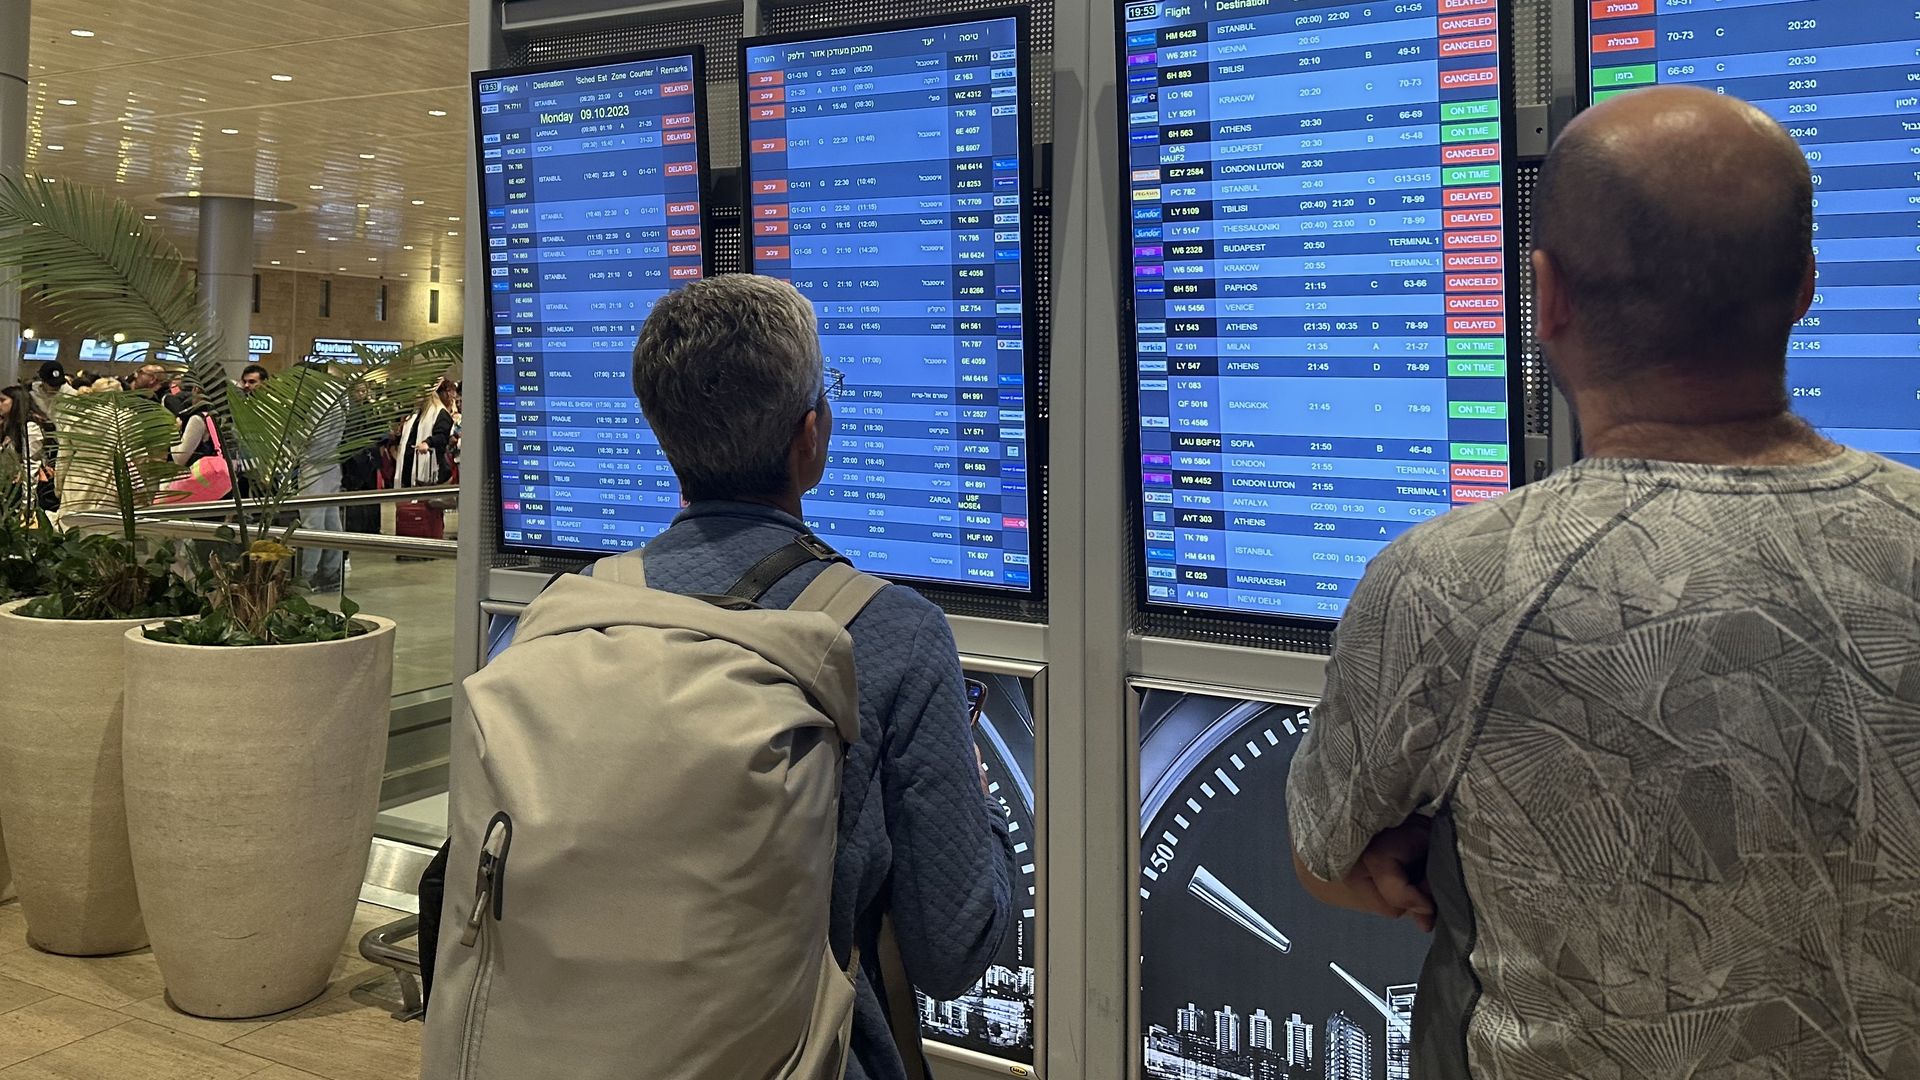 Airport security delay? : r/UPS